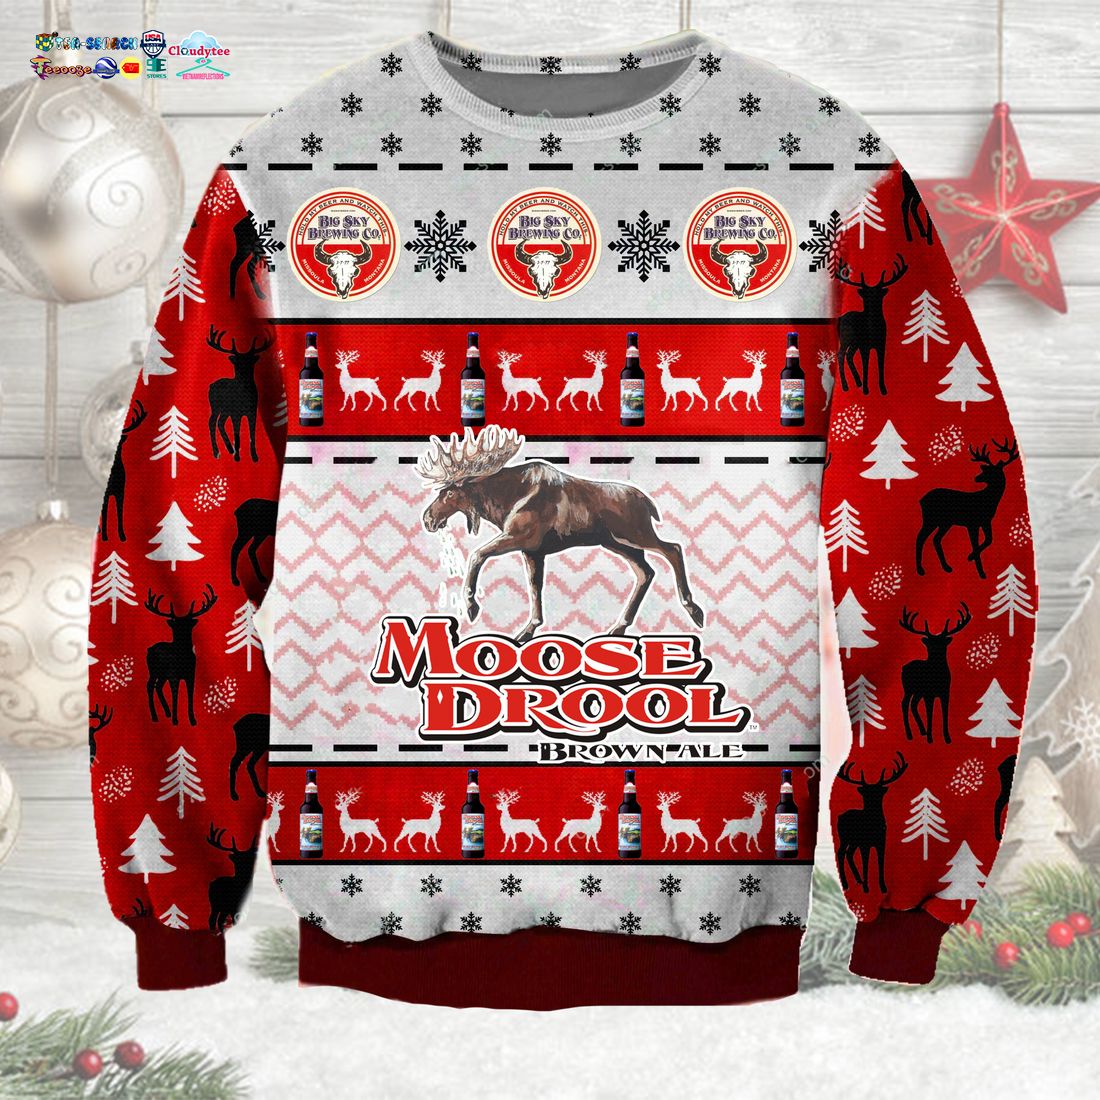 Moose Drool Ugly Christmas Sweater - Nice shot bro